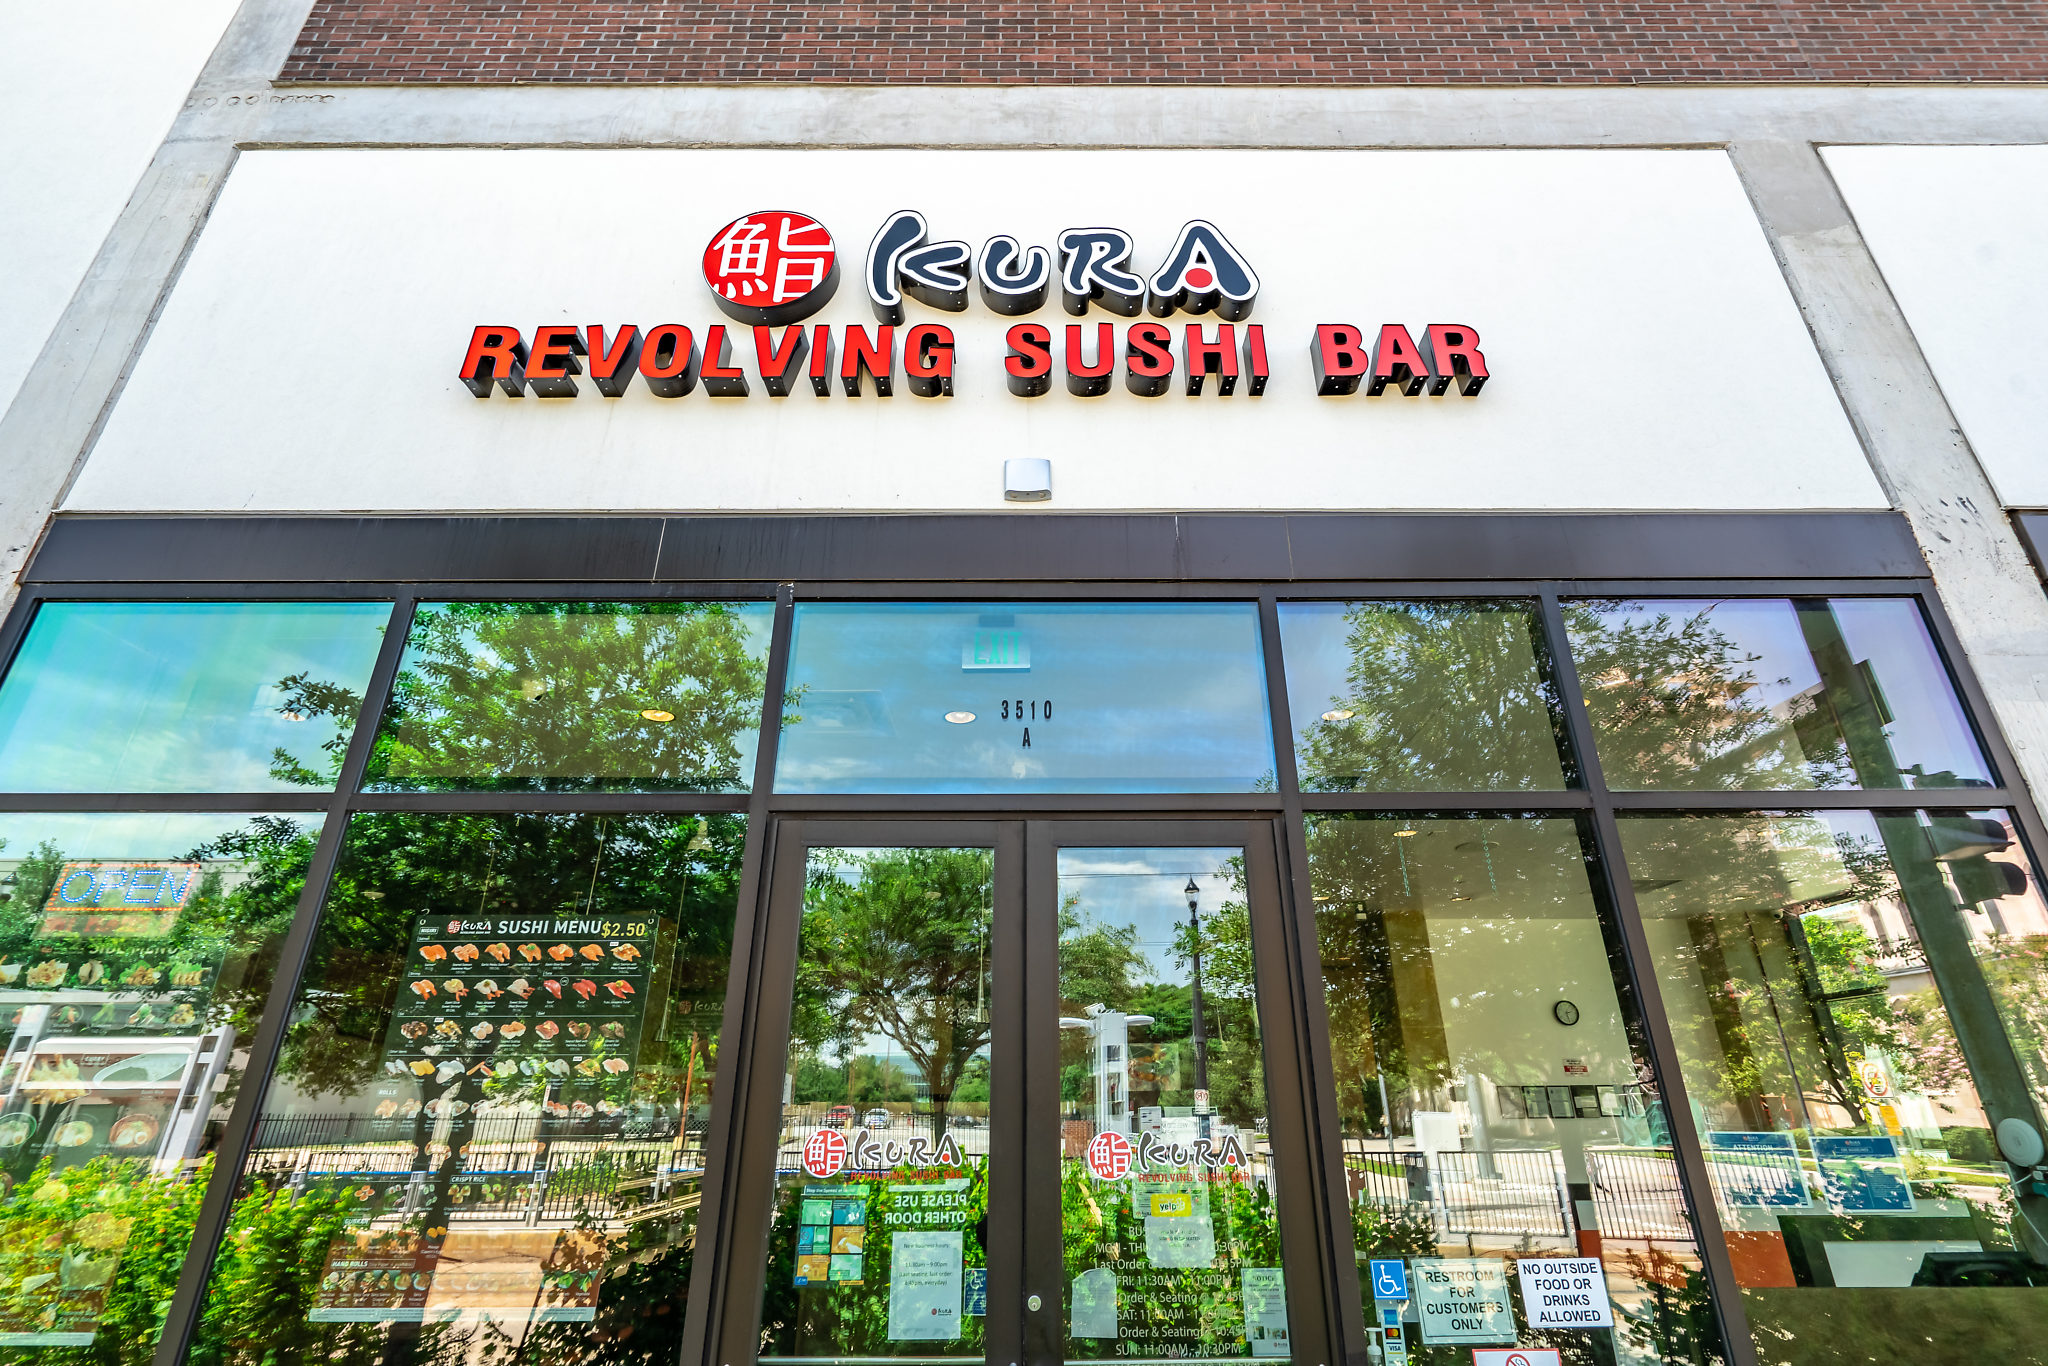 Kura Revolving Sushi Bar is one of the many restaurants located at Mid Main Lofts